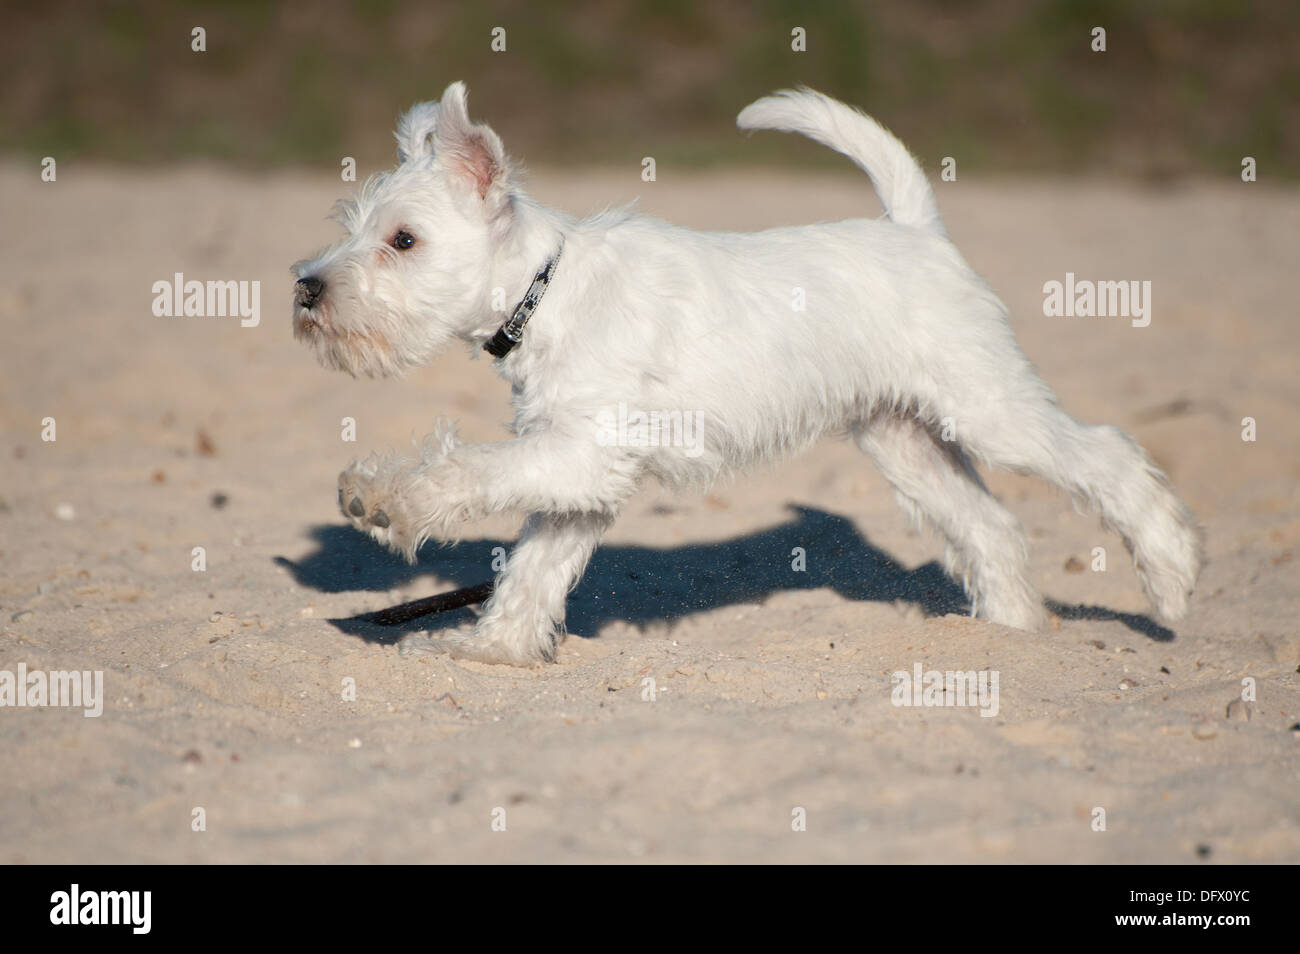 12-semaines-vieux chiot Schnauzer nain tournant dans le sable Banque D'Images